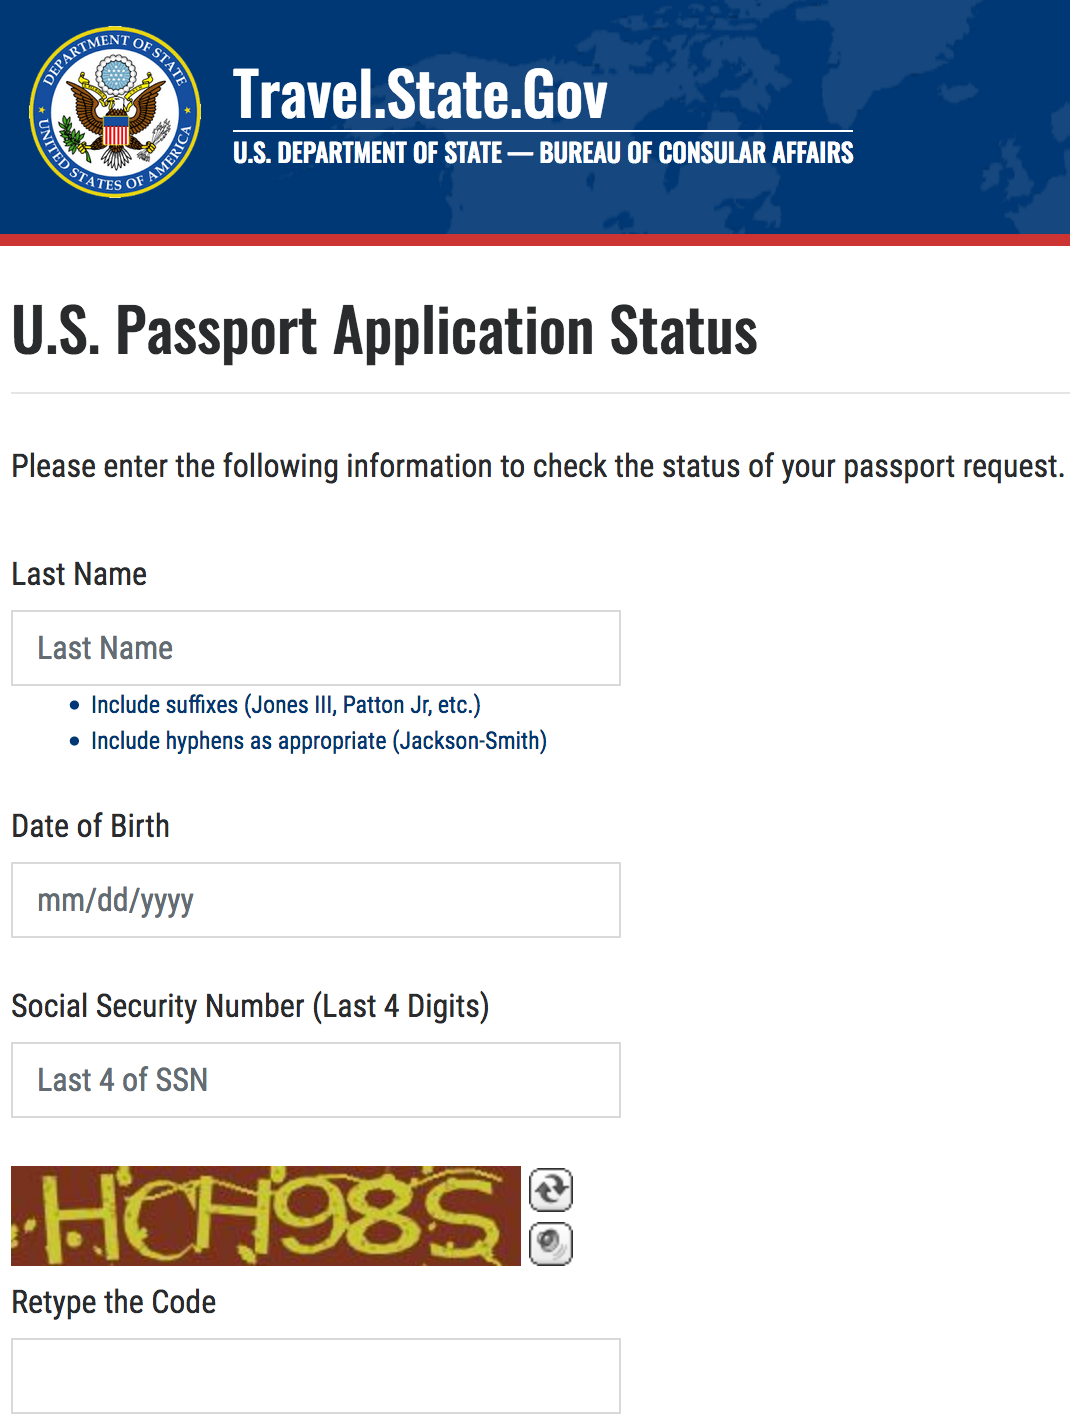 a screen shot of a passport application